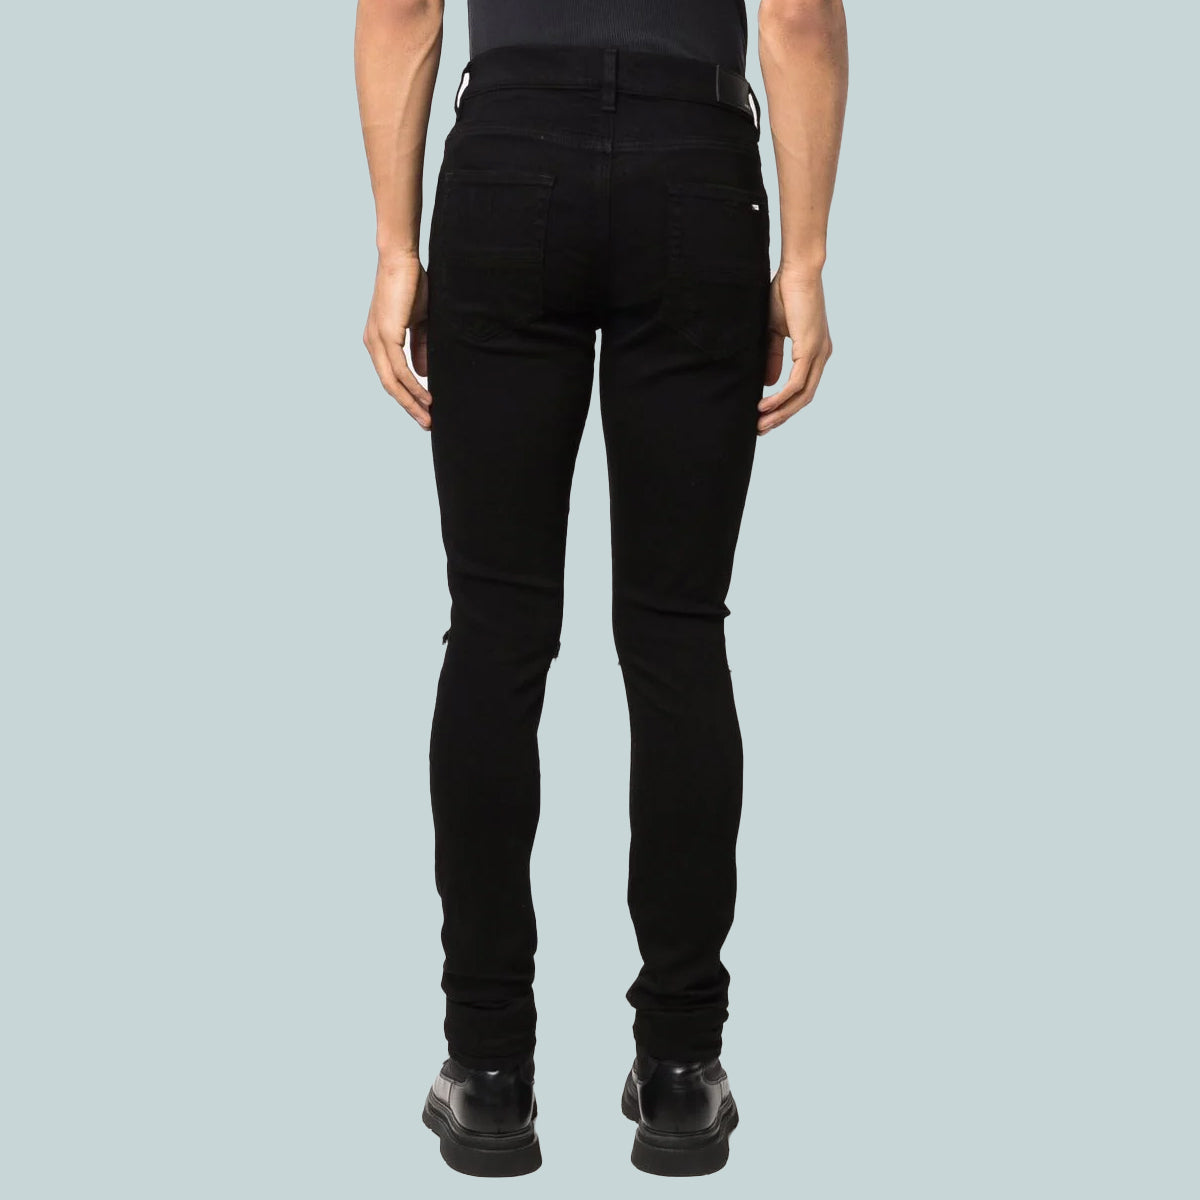 MX1 Jeans Black Bandana